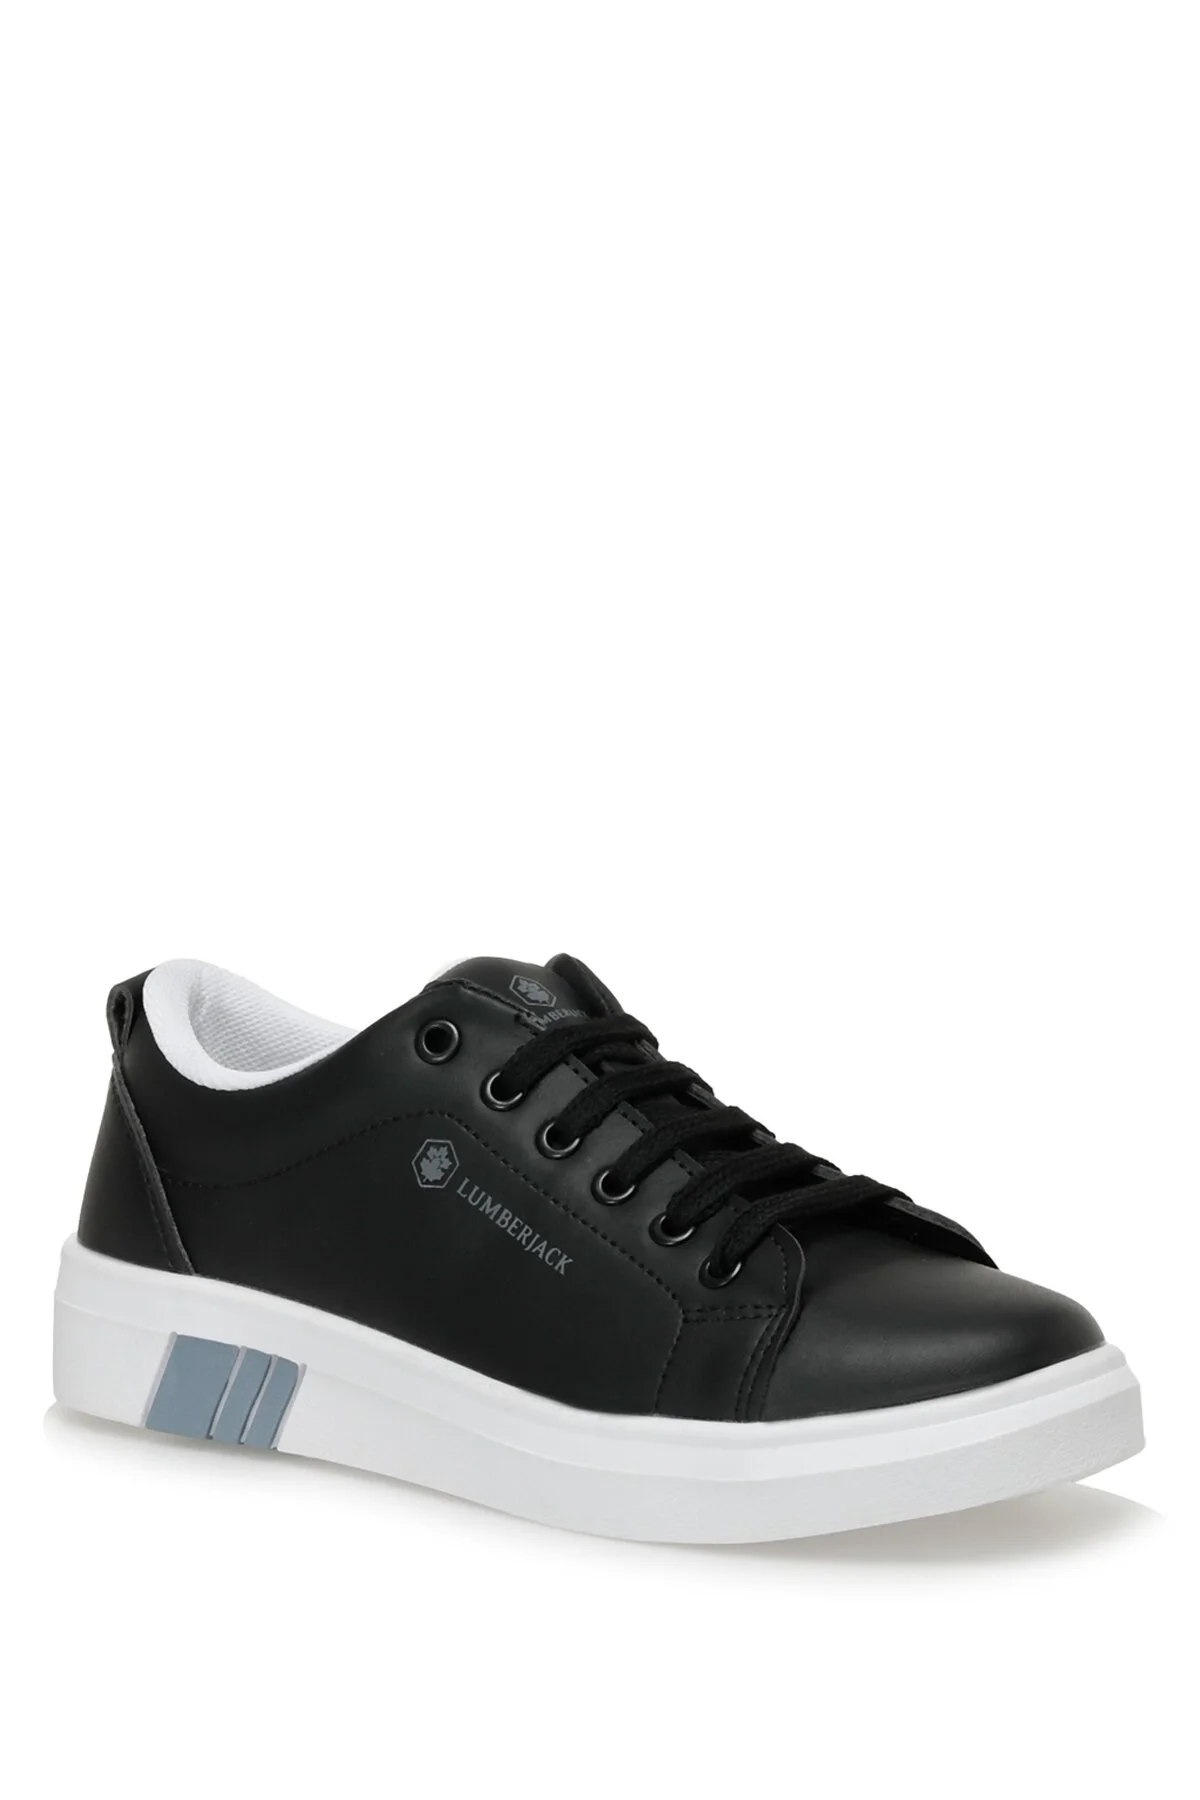 LUMBERJACK - TINA 3FX Kadın Sneaker Spor Ayakkabı-Siyah